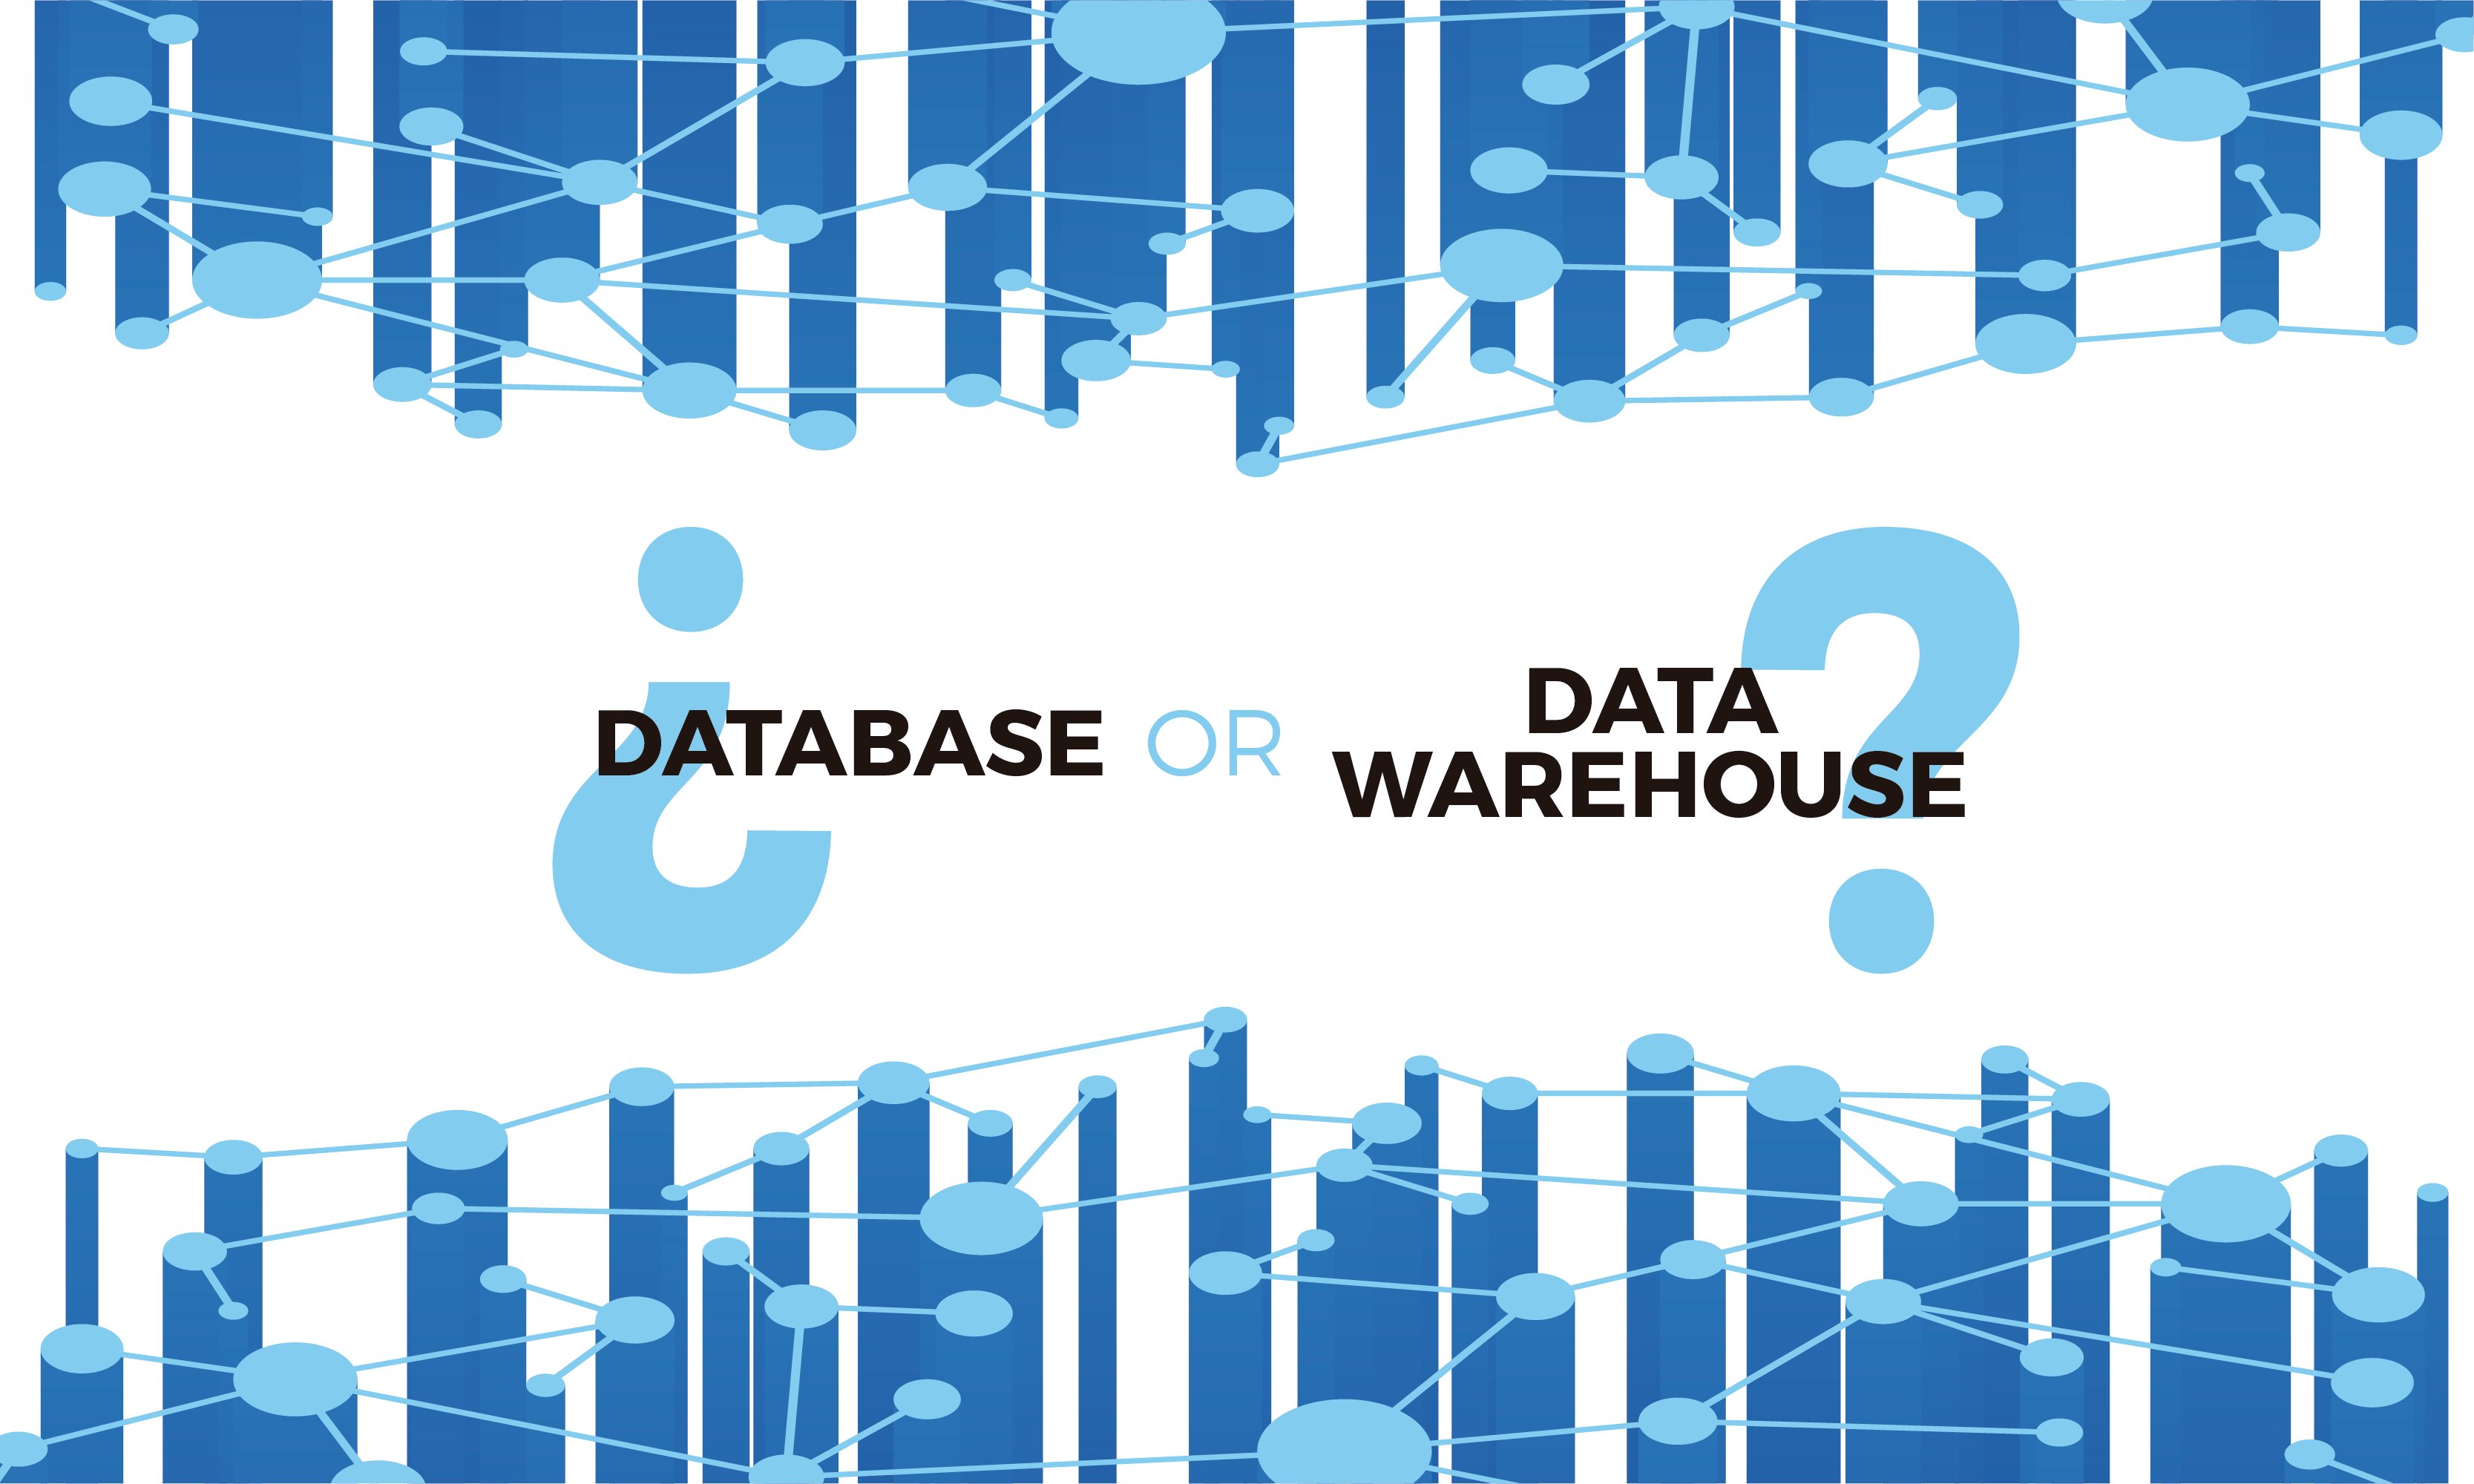 Database or datawarehouse